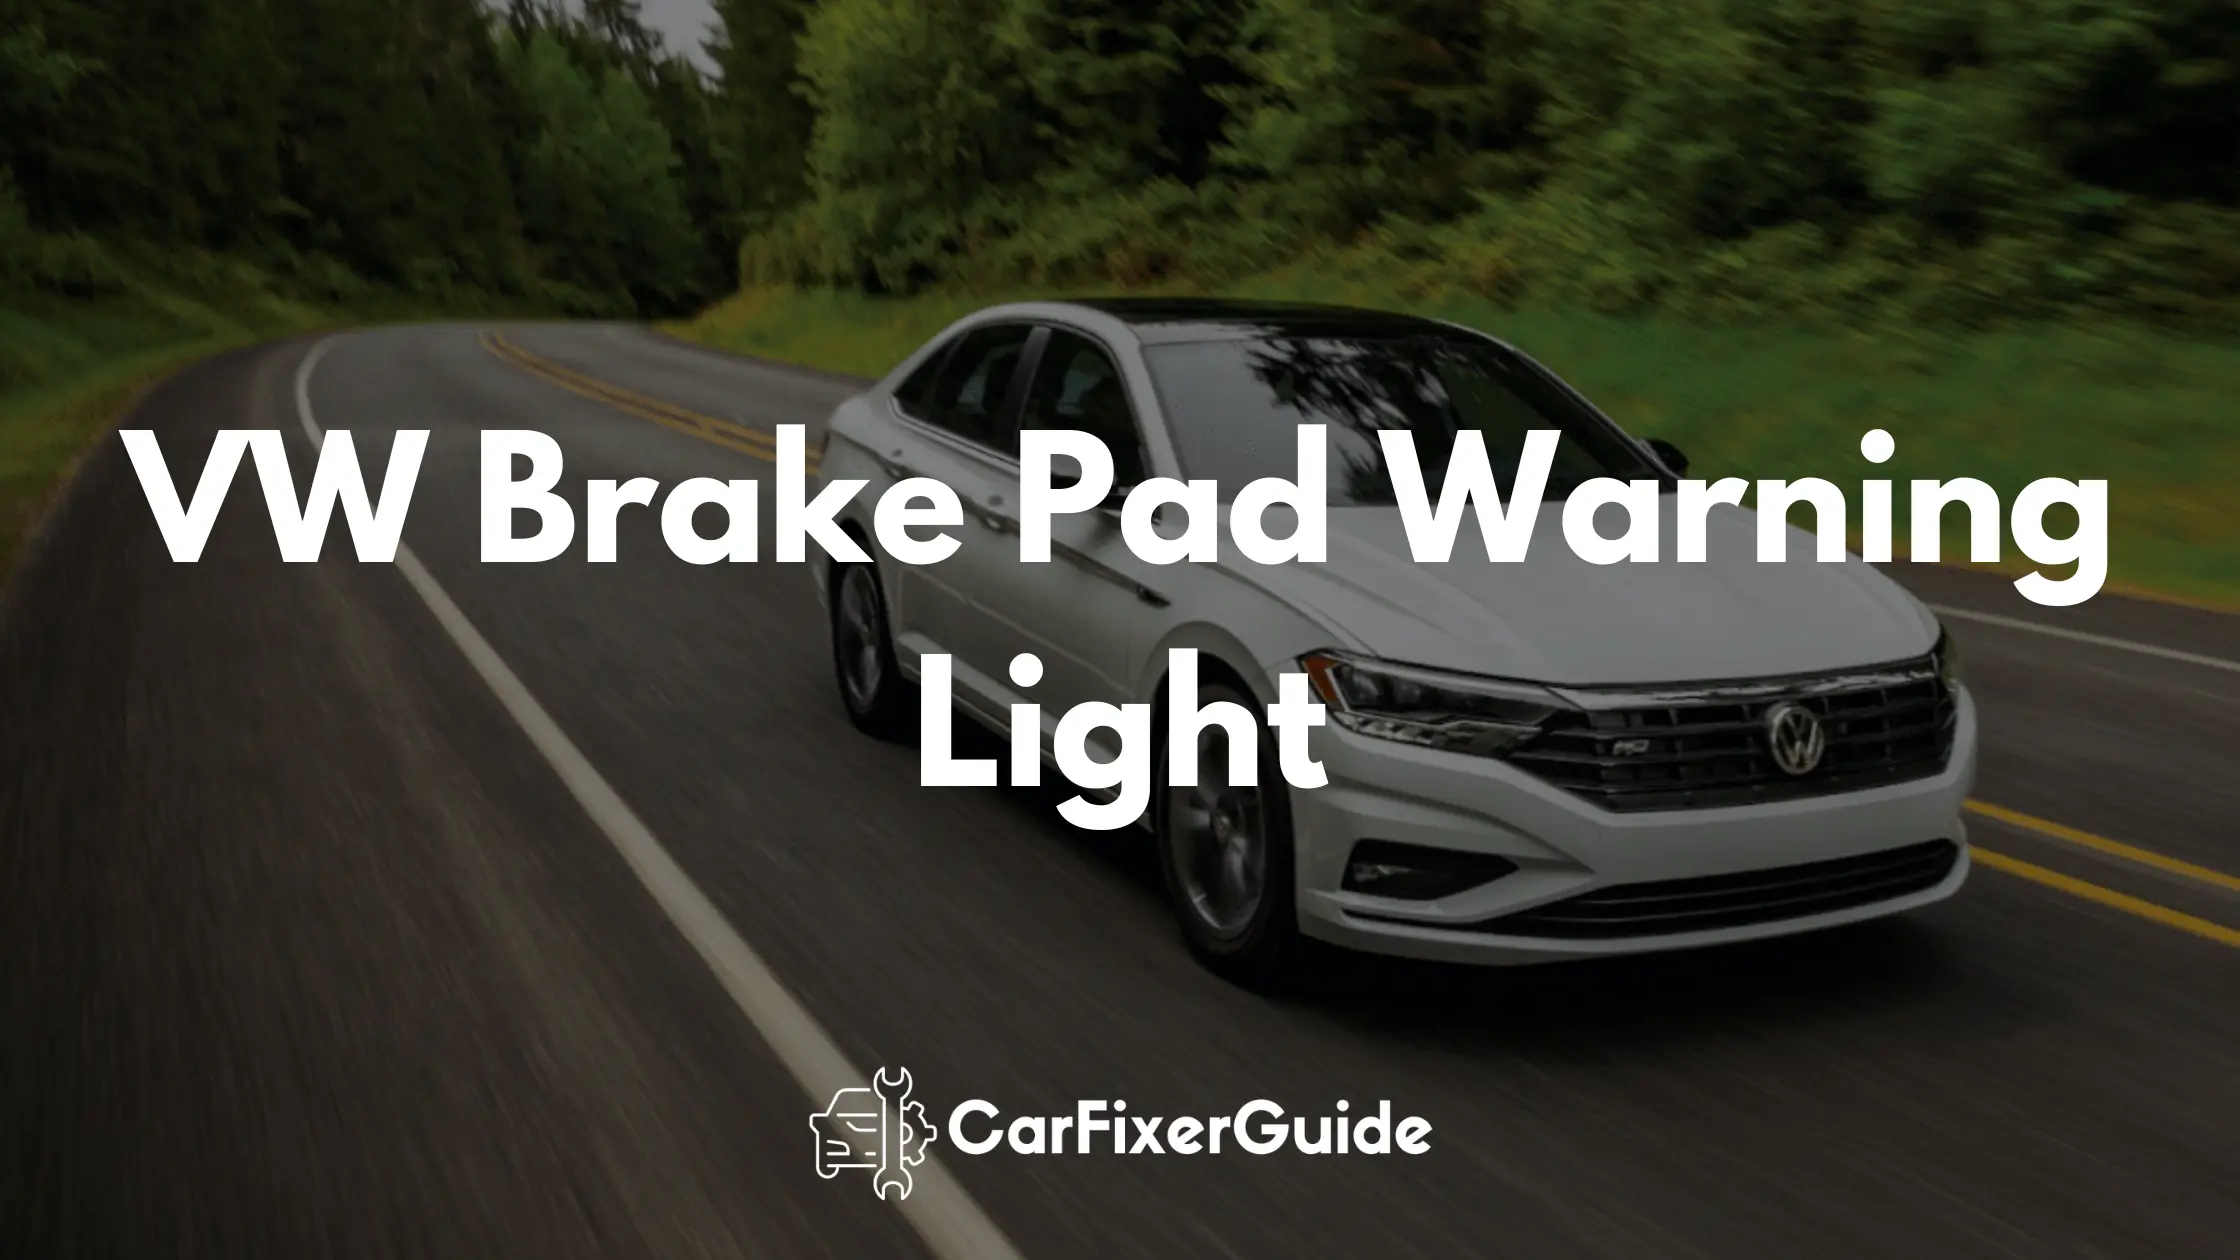 VW Brake Pad Warning Light